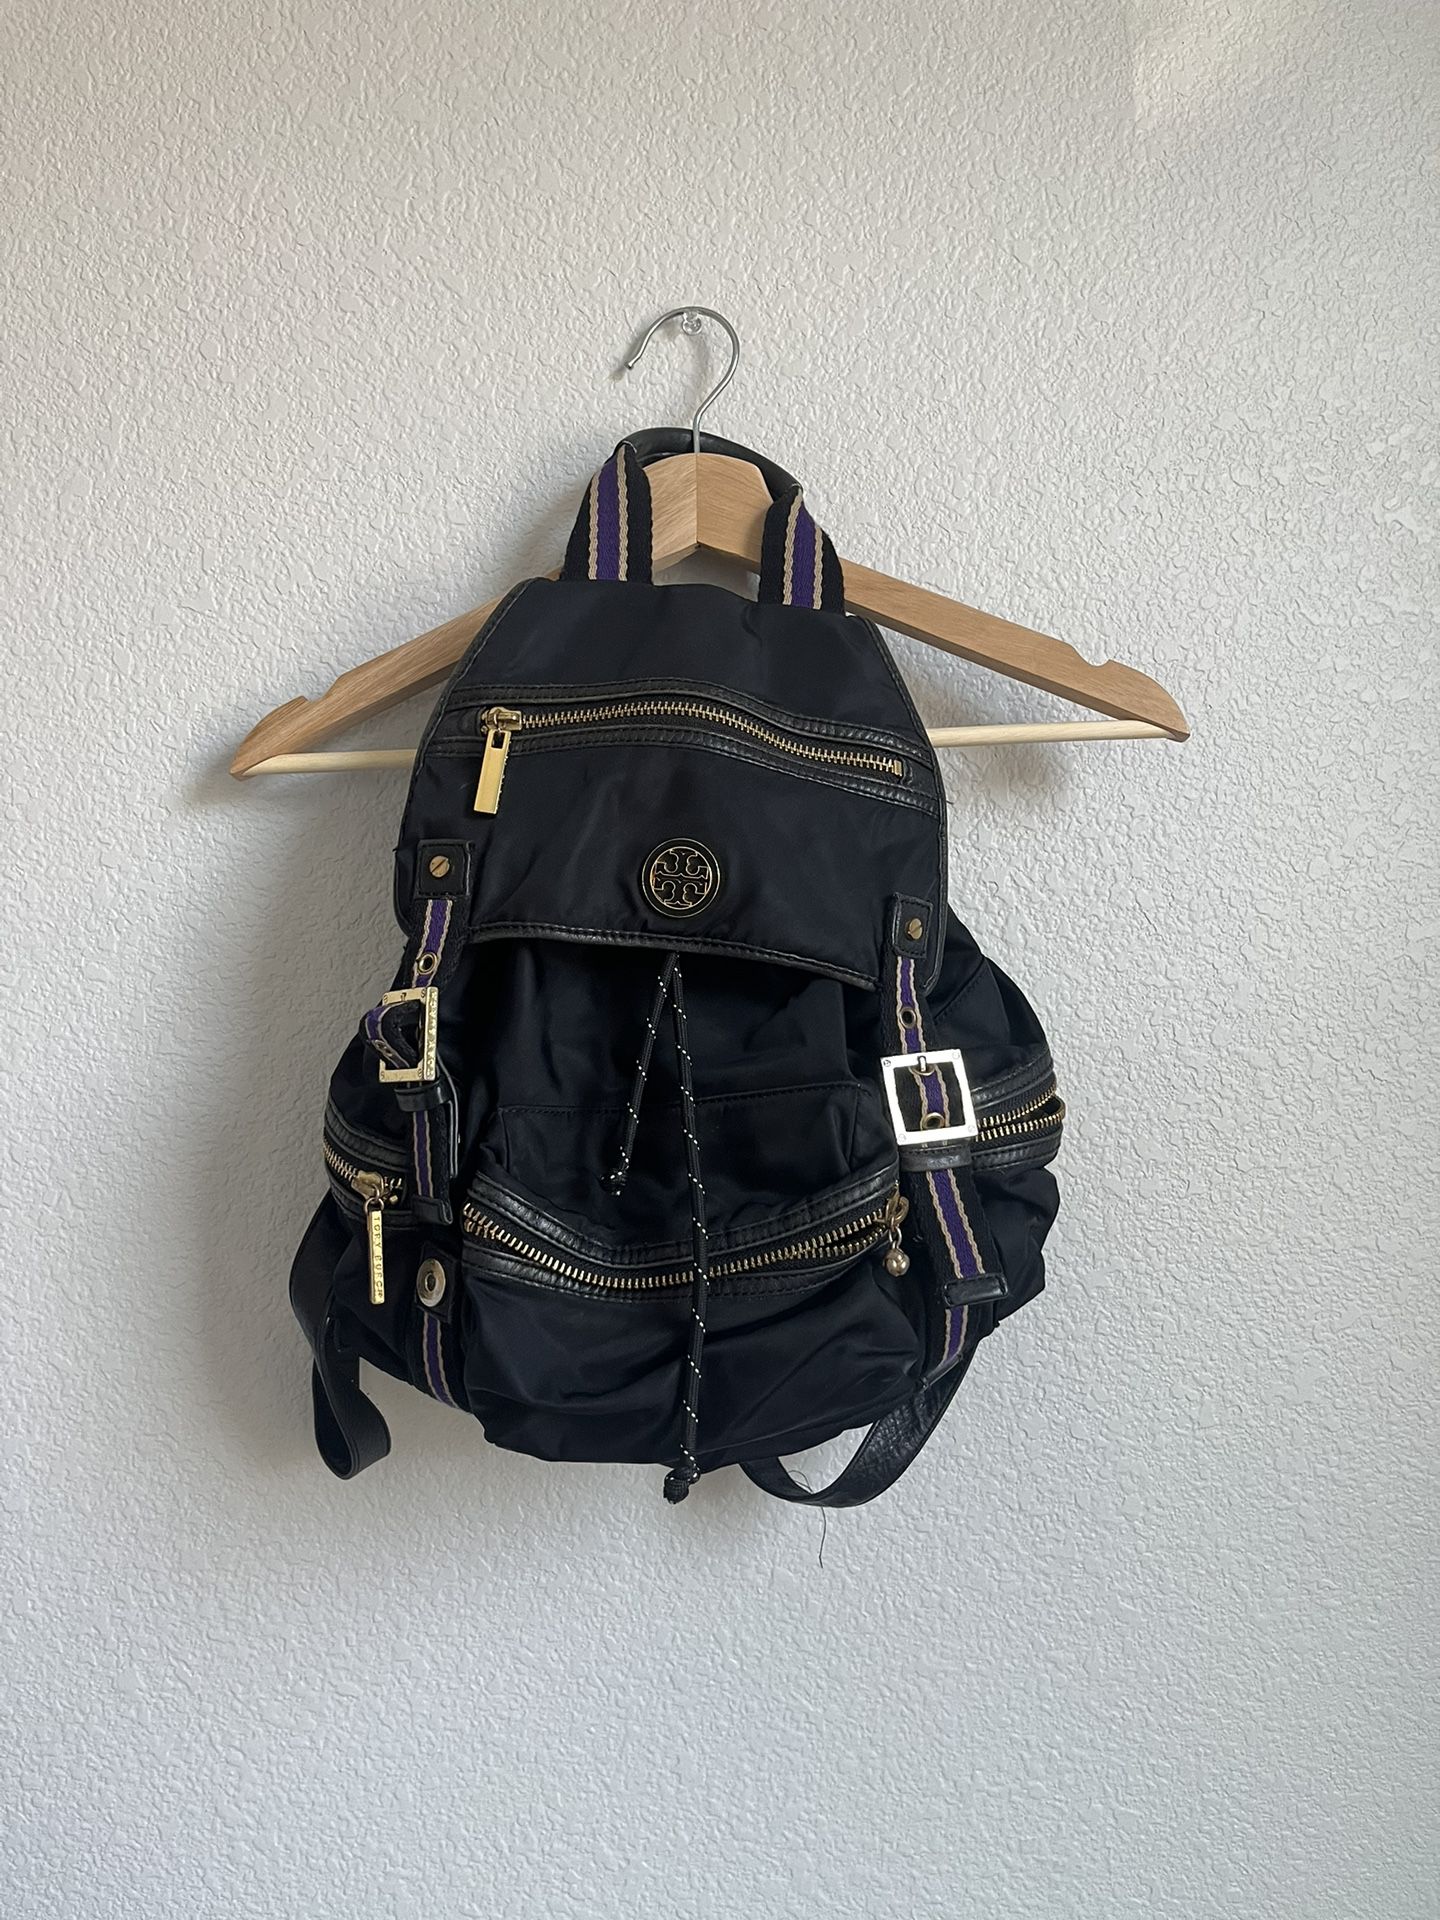 TORY BURCH backpack